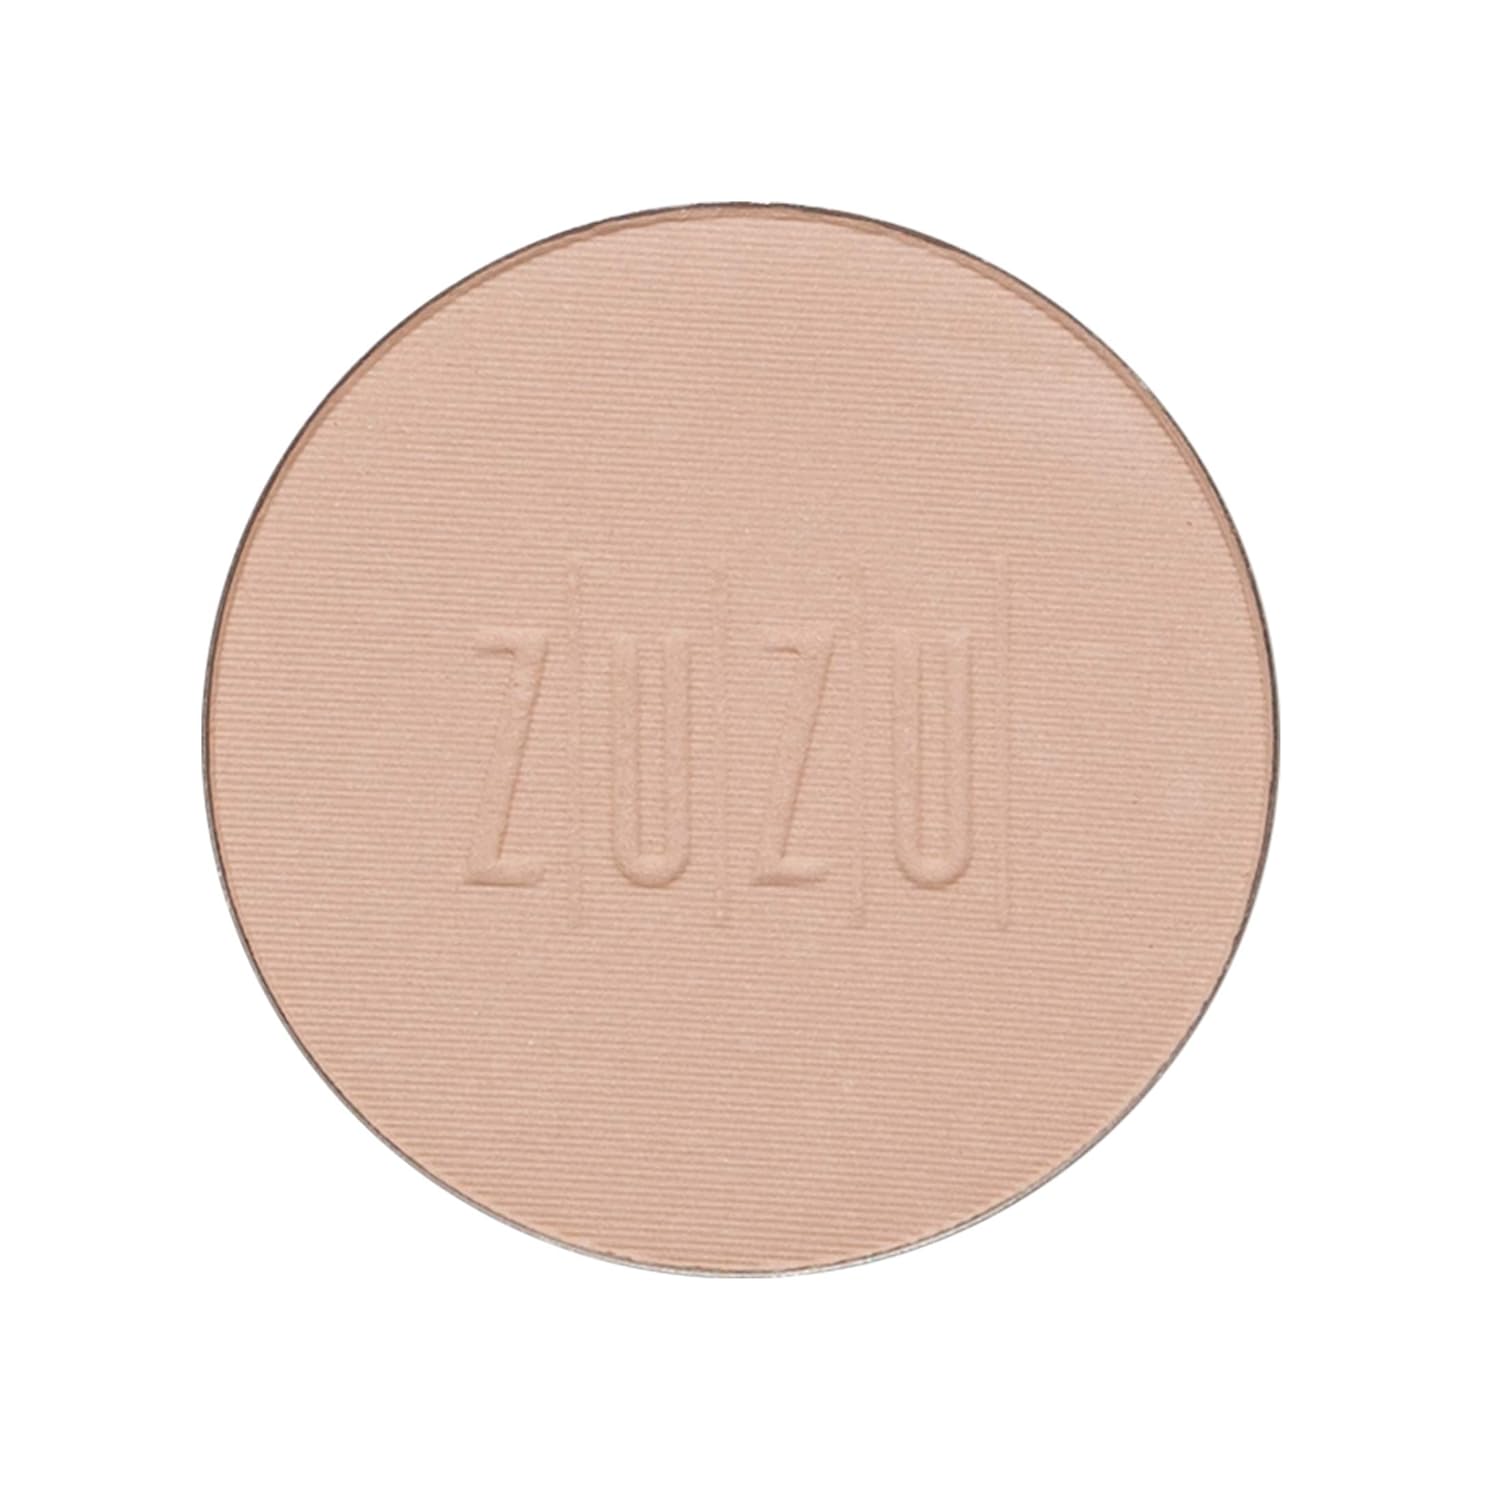 ZUZU-LUXE-Mineral-Powder,-Dual-Powder-Foundation,-2148